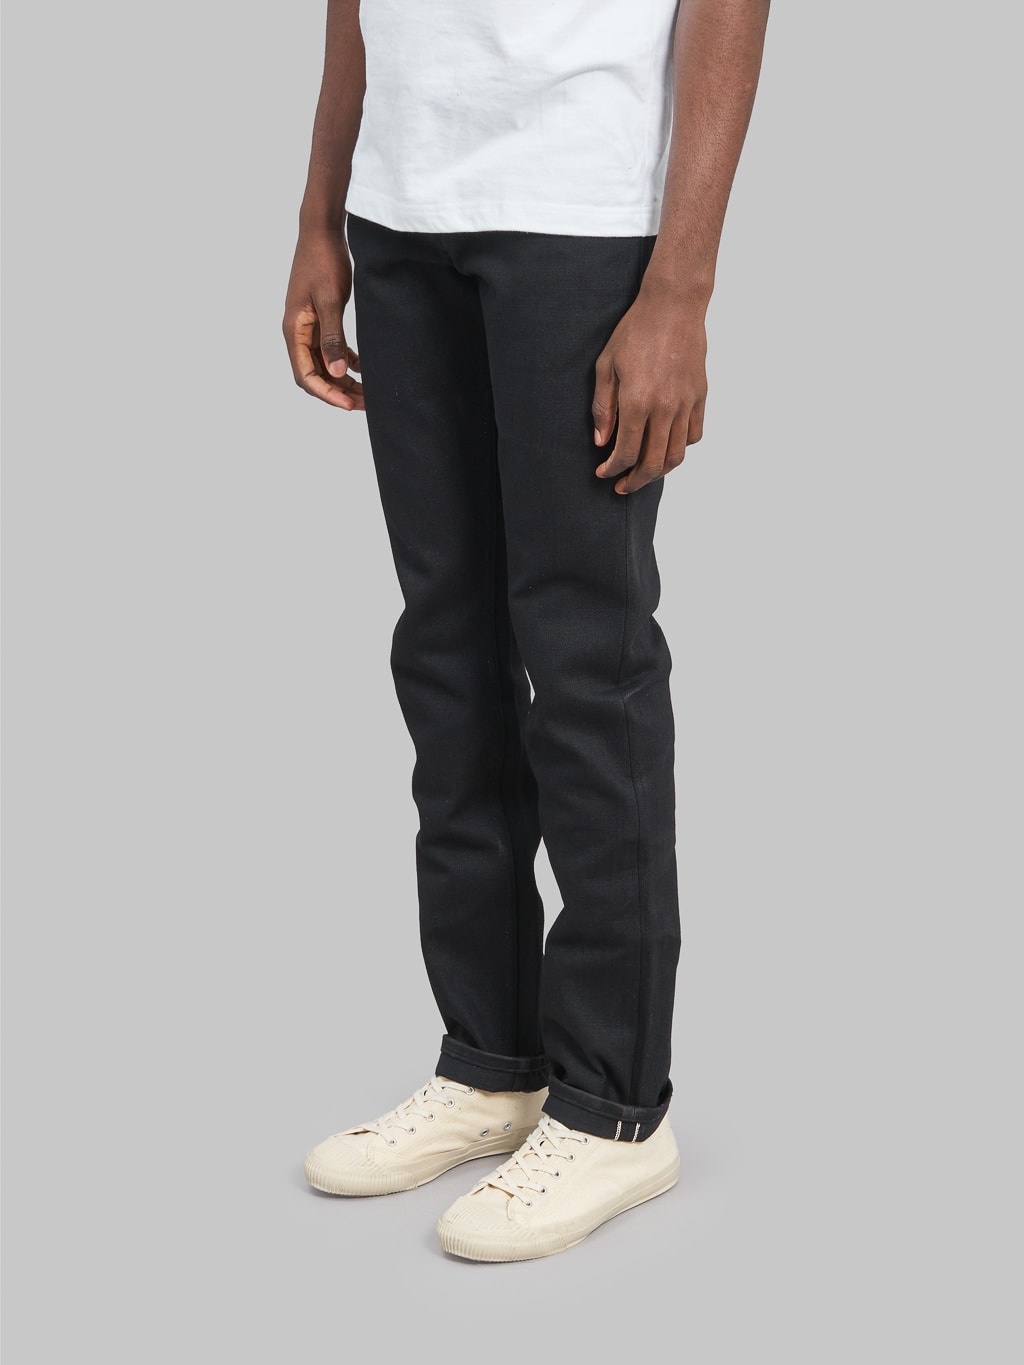 Freenote Cloth Avila 17oz Black Denim Slim Taper Jeans side fit